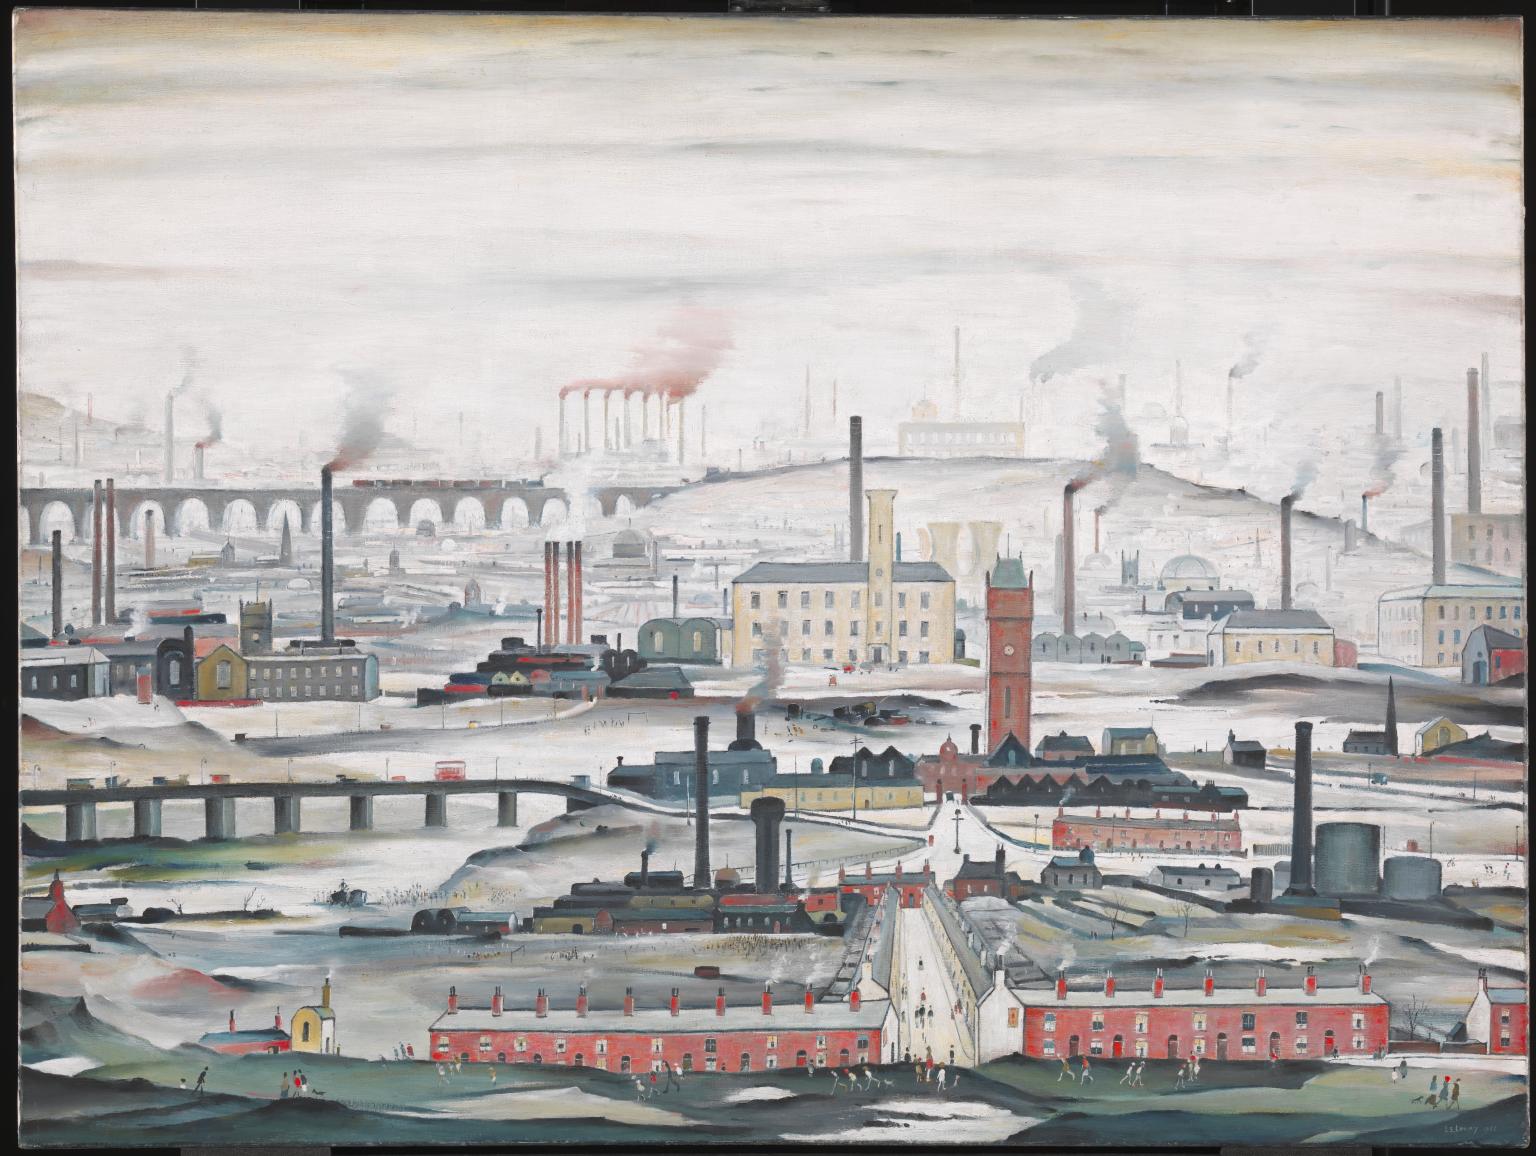 'Индустријски пејзаж' (1955) - широко призната као најпознатија тема на Ловријевим сликама и принтовима